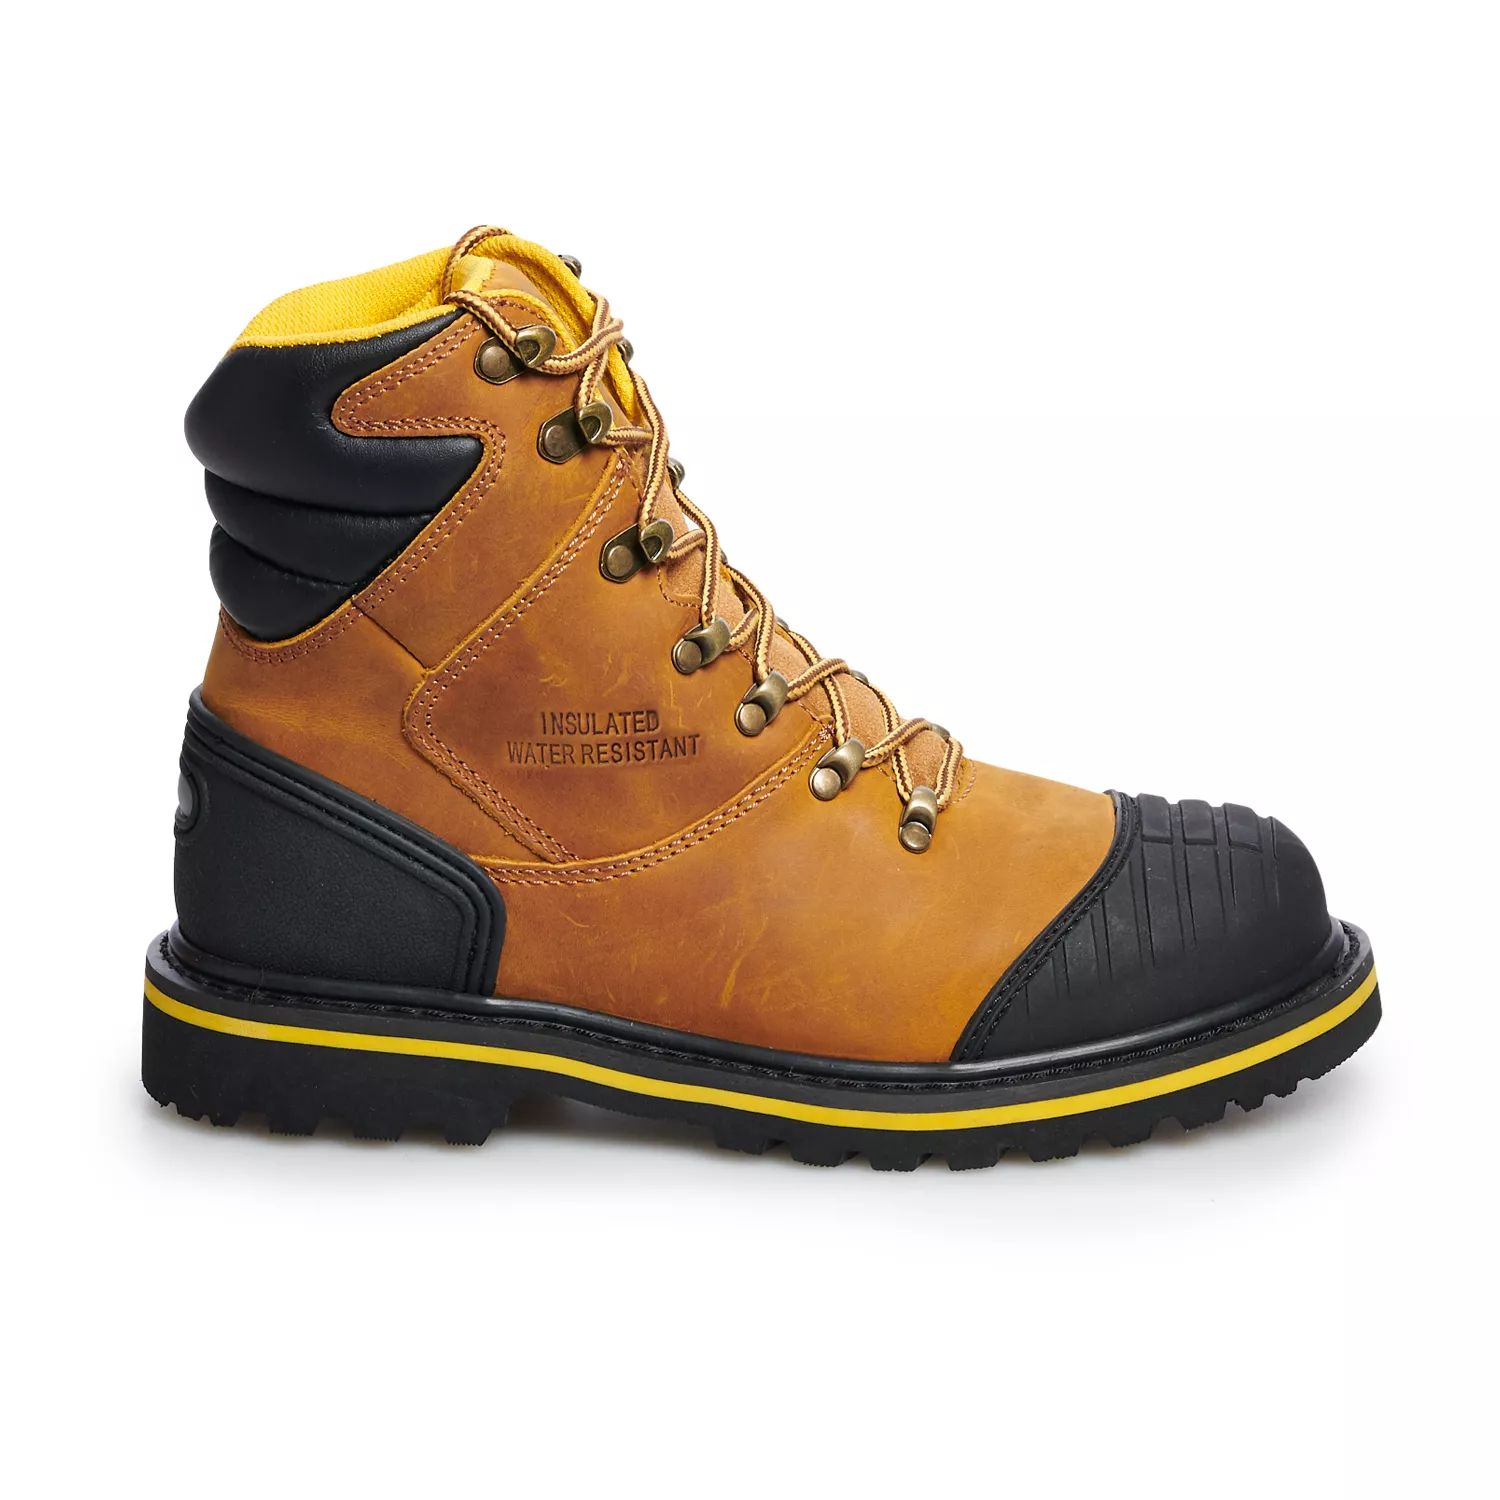 AdTec 9804 Мужские водонепроницаемые рабочие ботинки со стальным носком мужские рабочие ботинки adtec logger со стальным носком